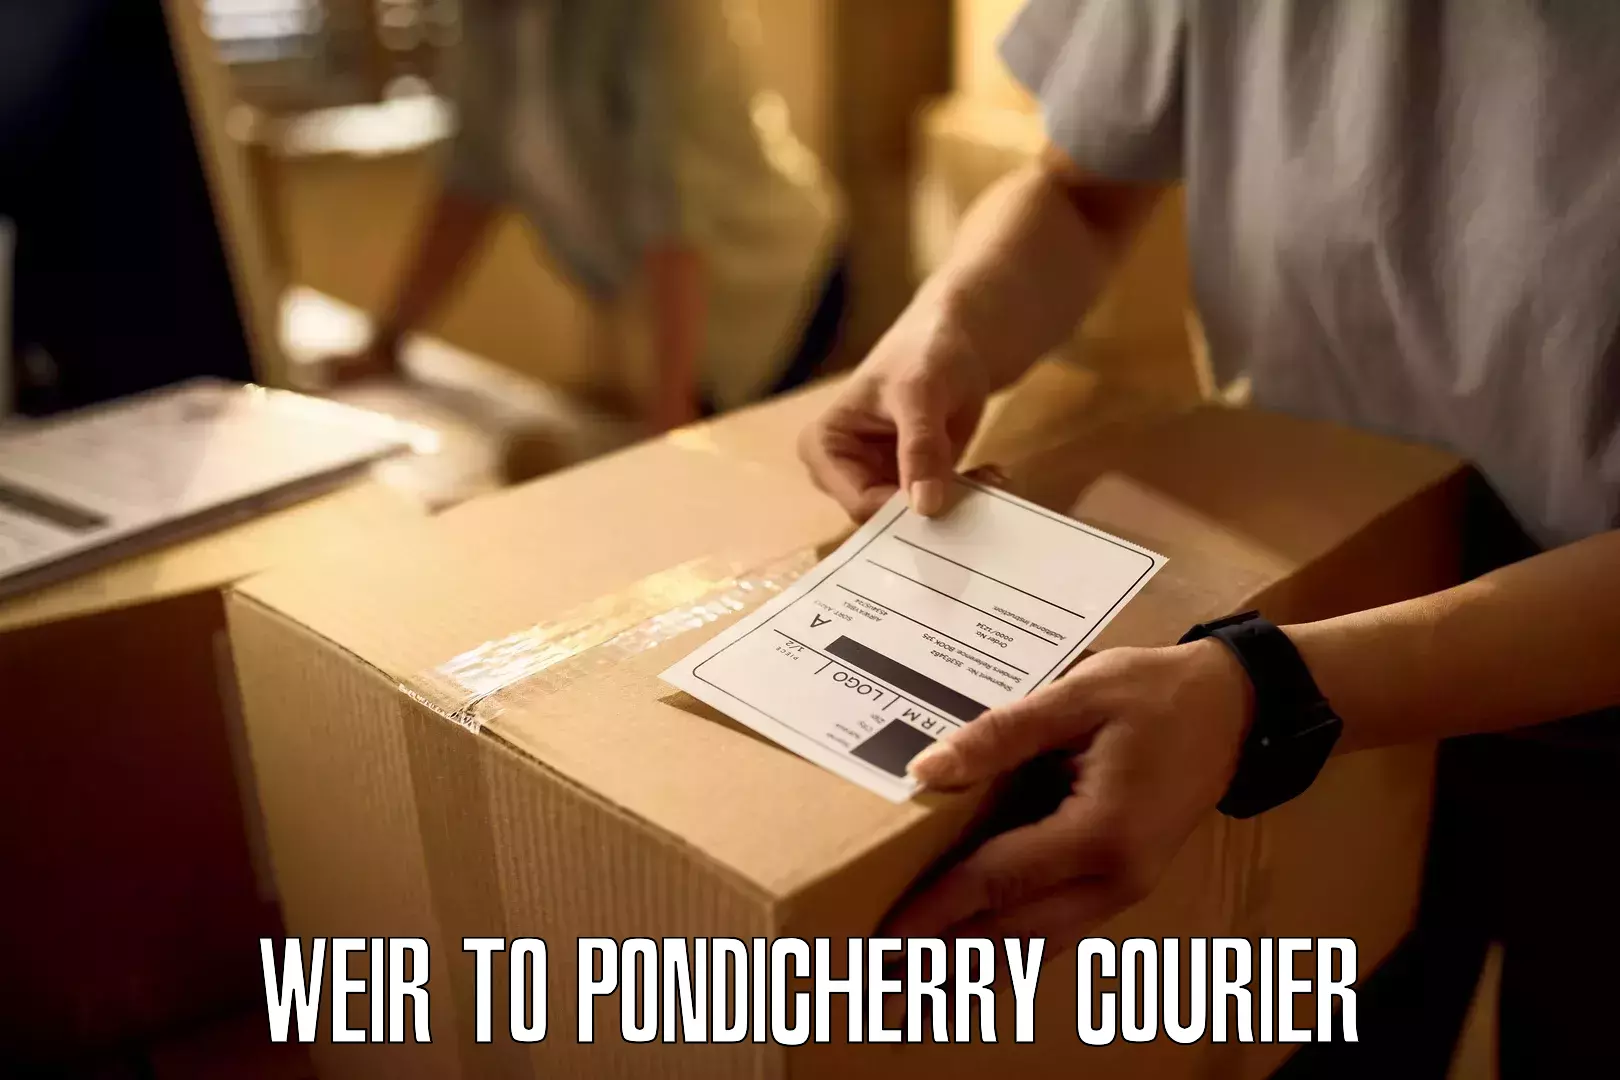 Cargo courier service Weir to NIT Puducherry